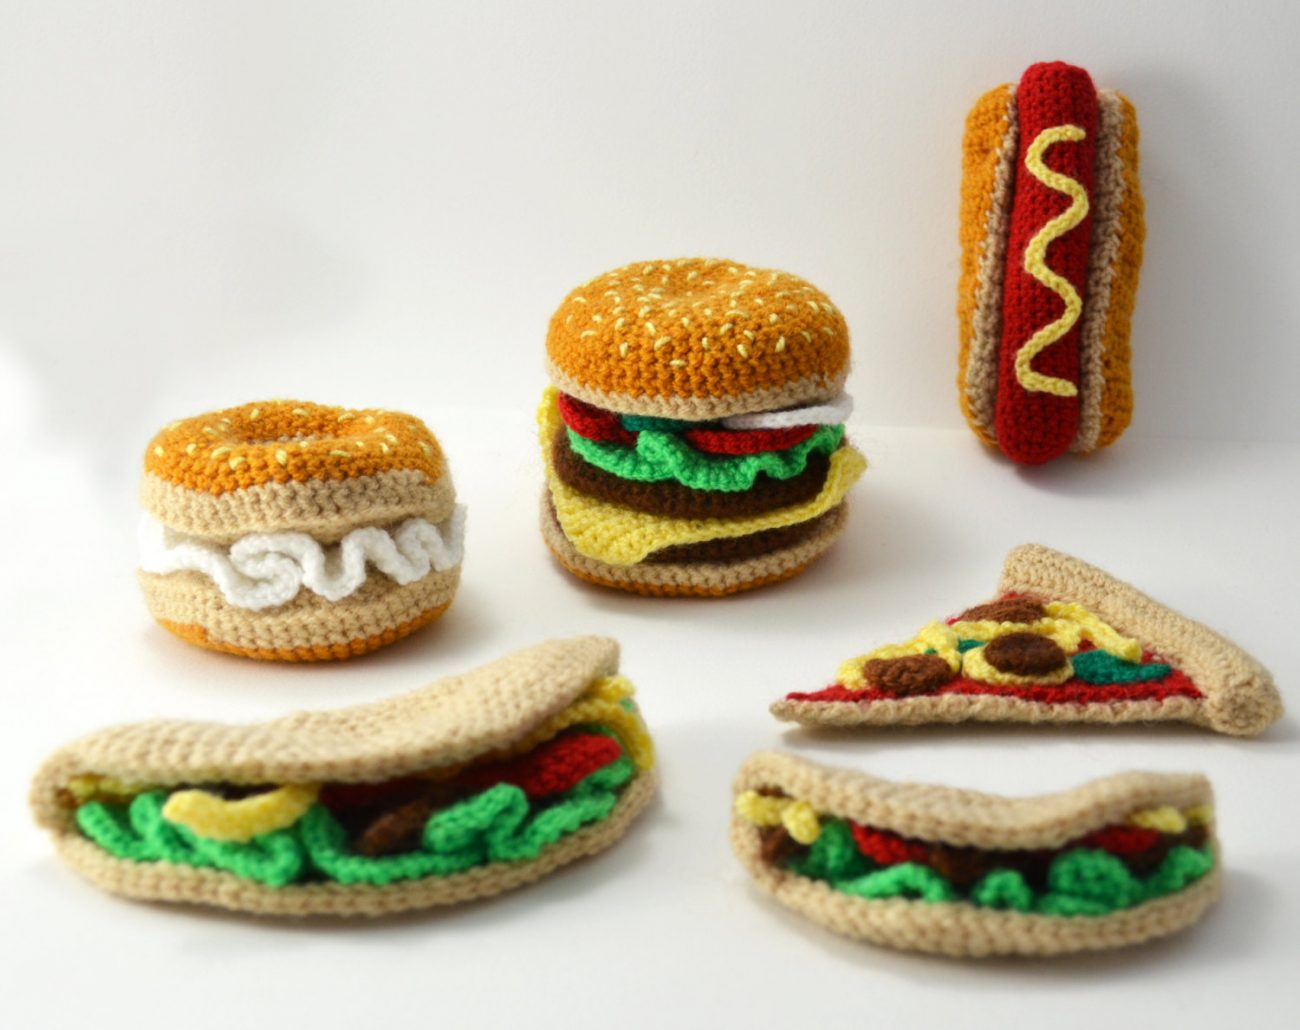 Uitgebreid assortiment gehaakte snacks door de Nederlandse beeldend kunstenaar Joyce Overheul.